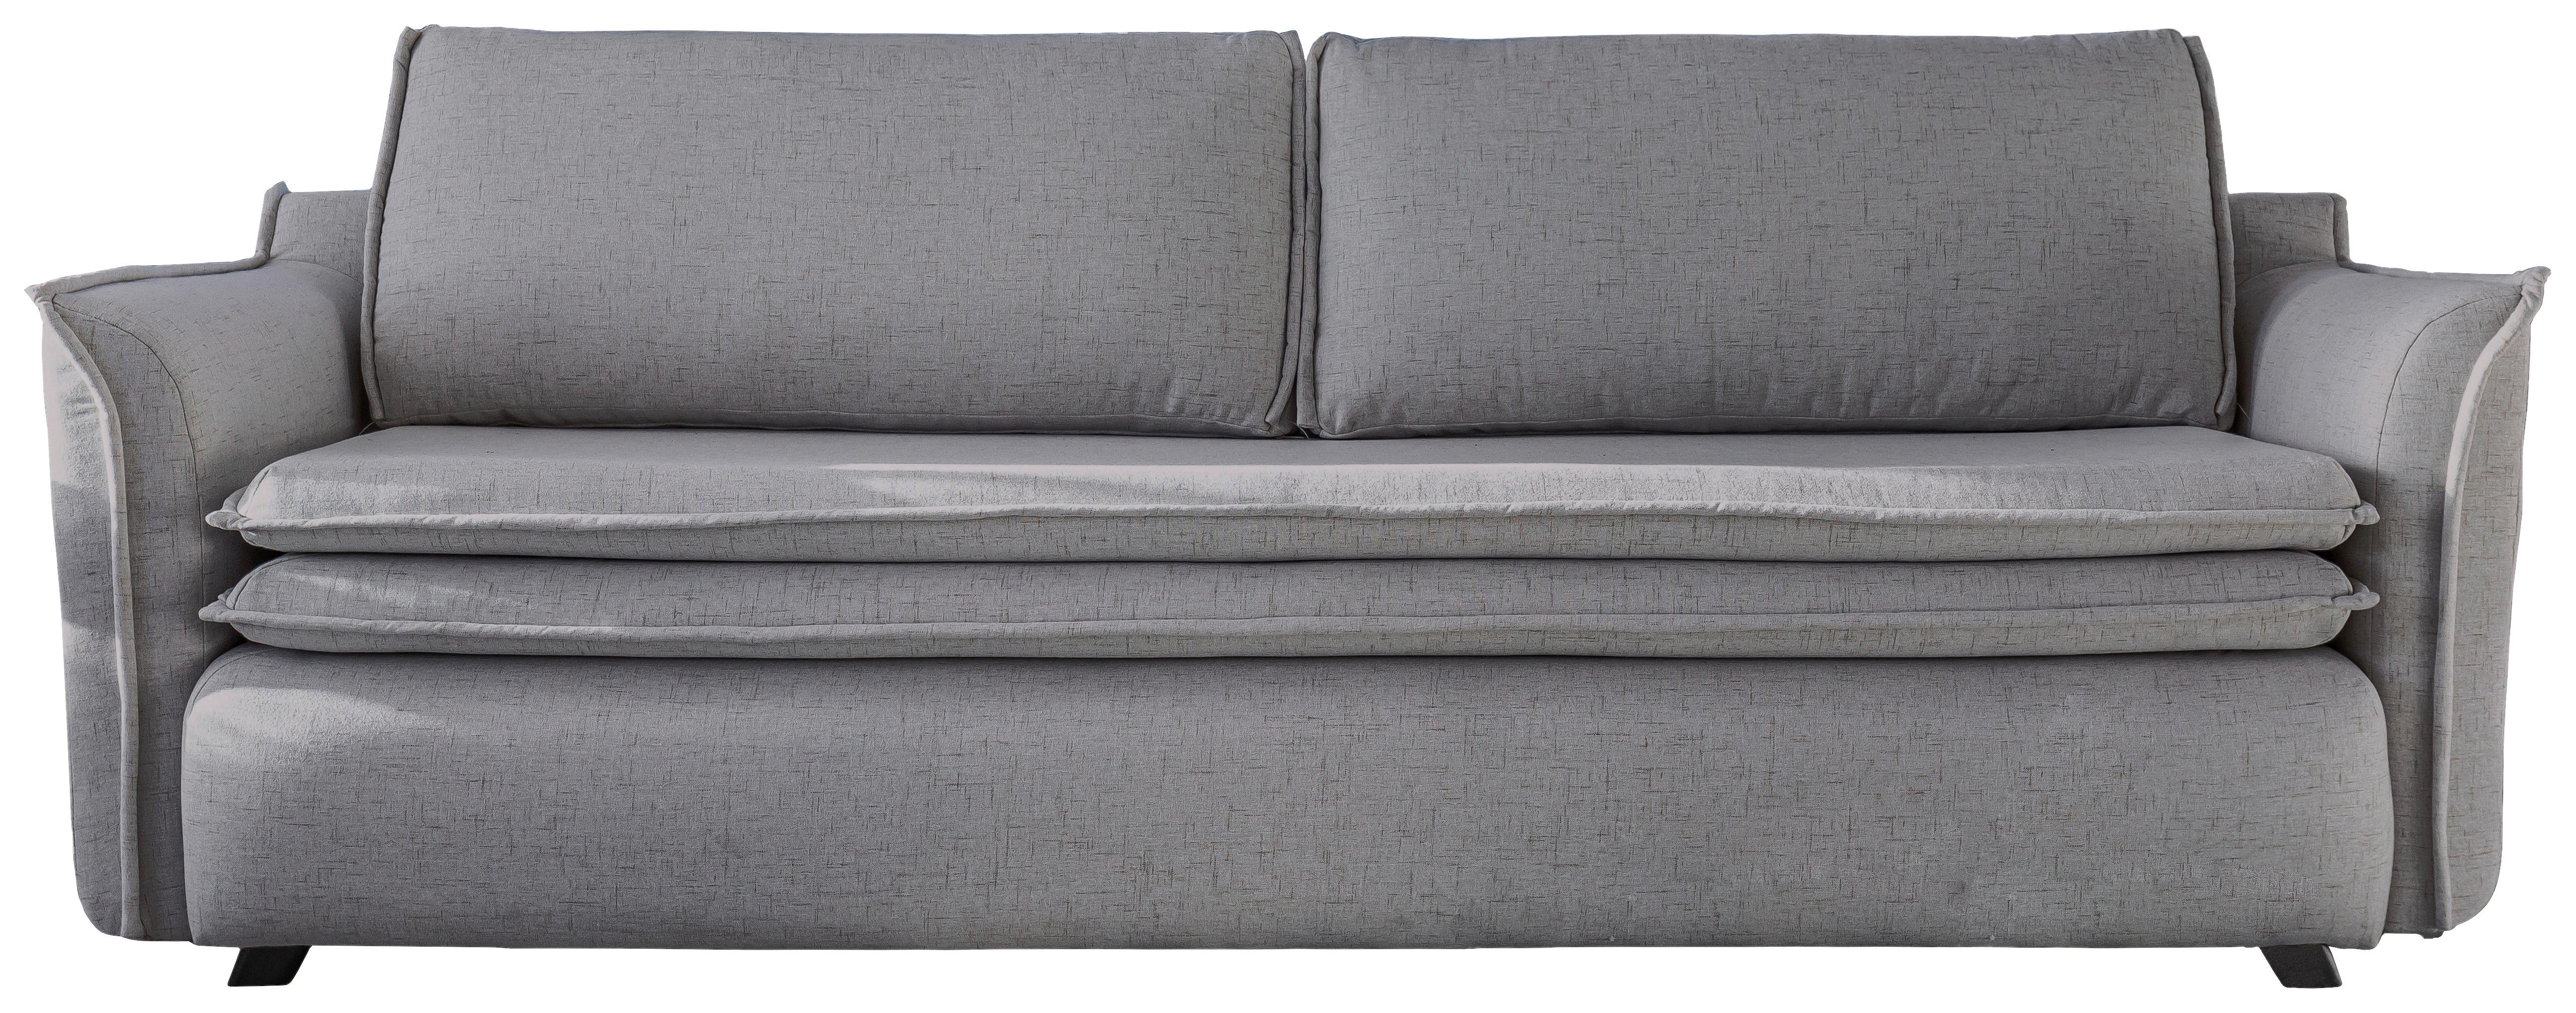 Dreisitzer-Sofa in Grau ´CHARMING CHARLIE´ - Schwarz/Grau, Basics, Holz/Holzwerkstoff (225/85/90cm) - MID.YOU